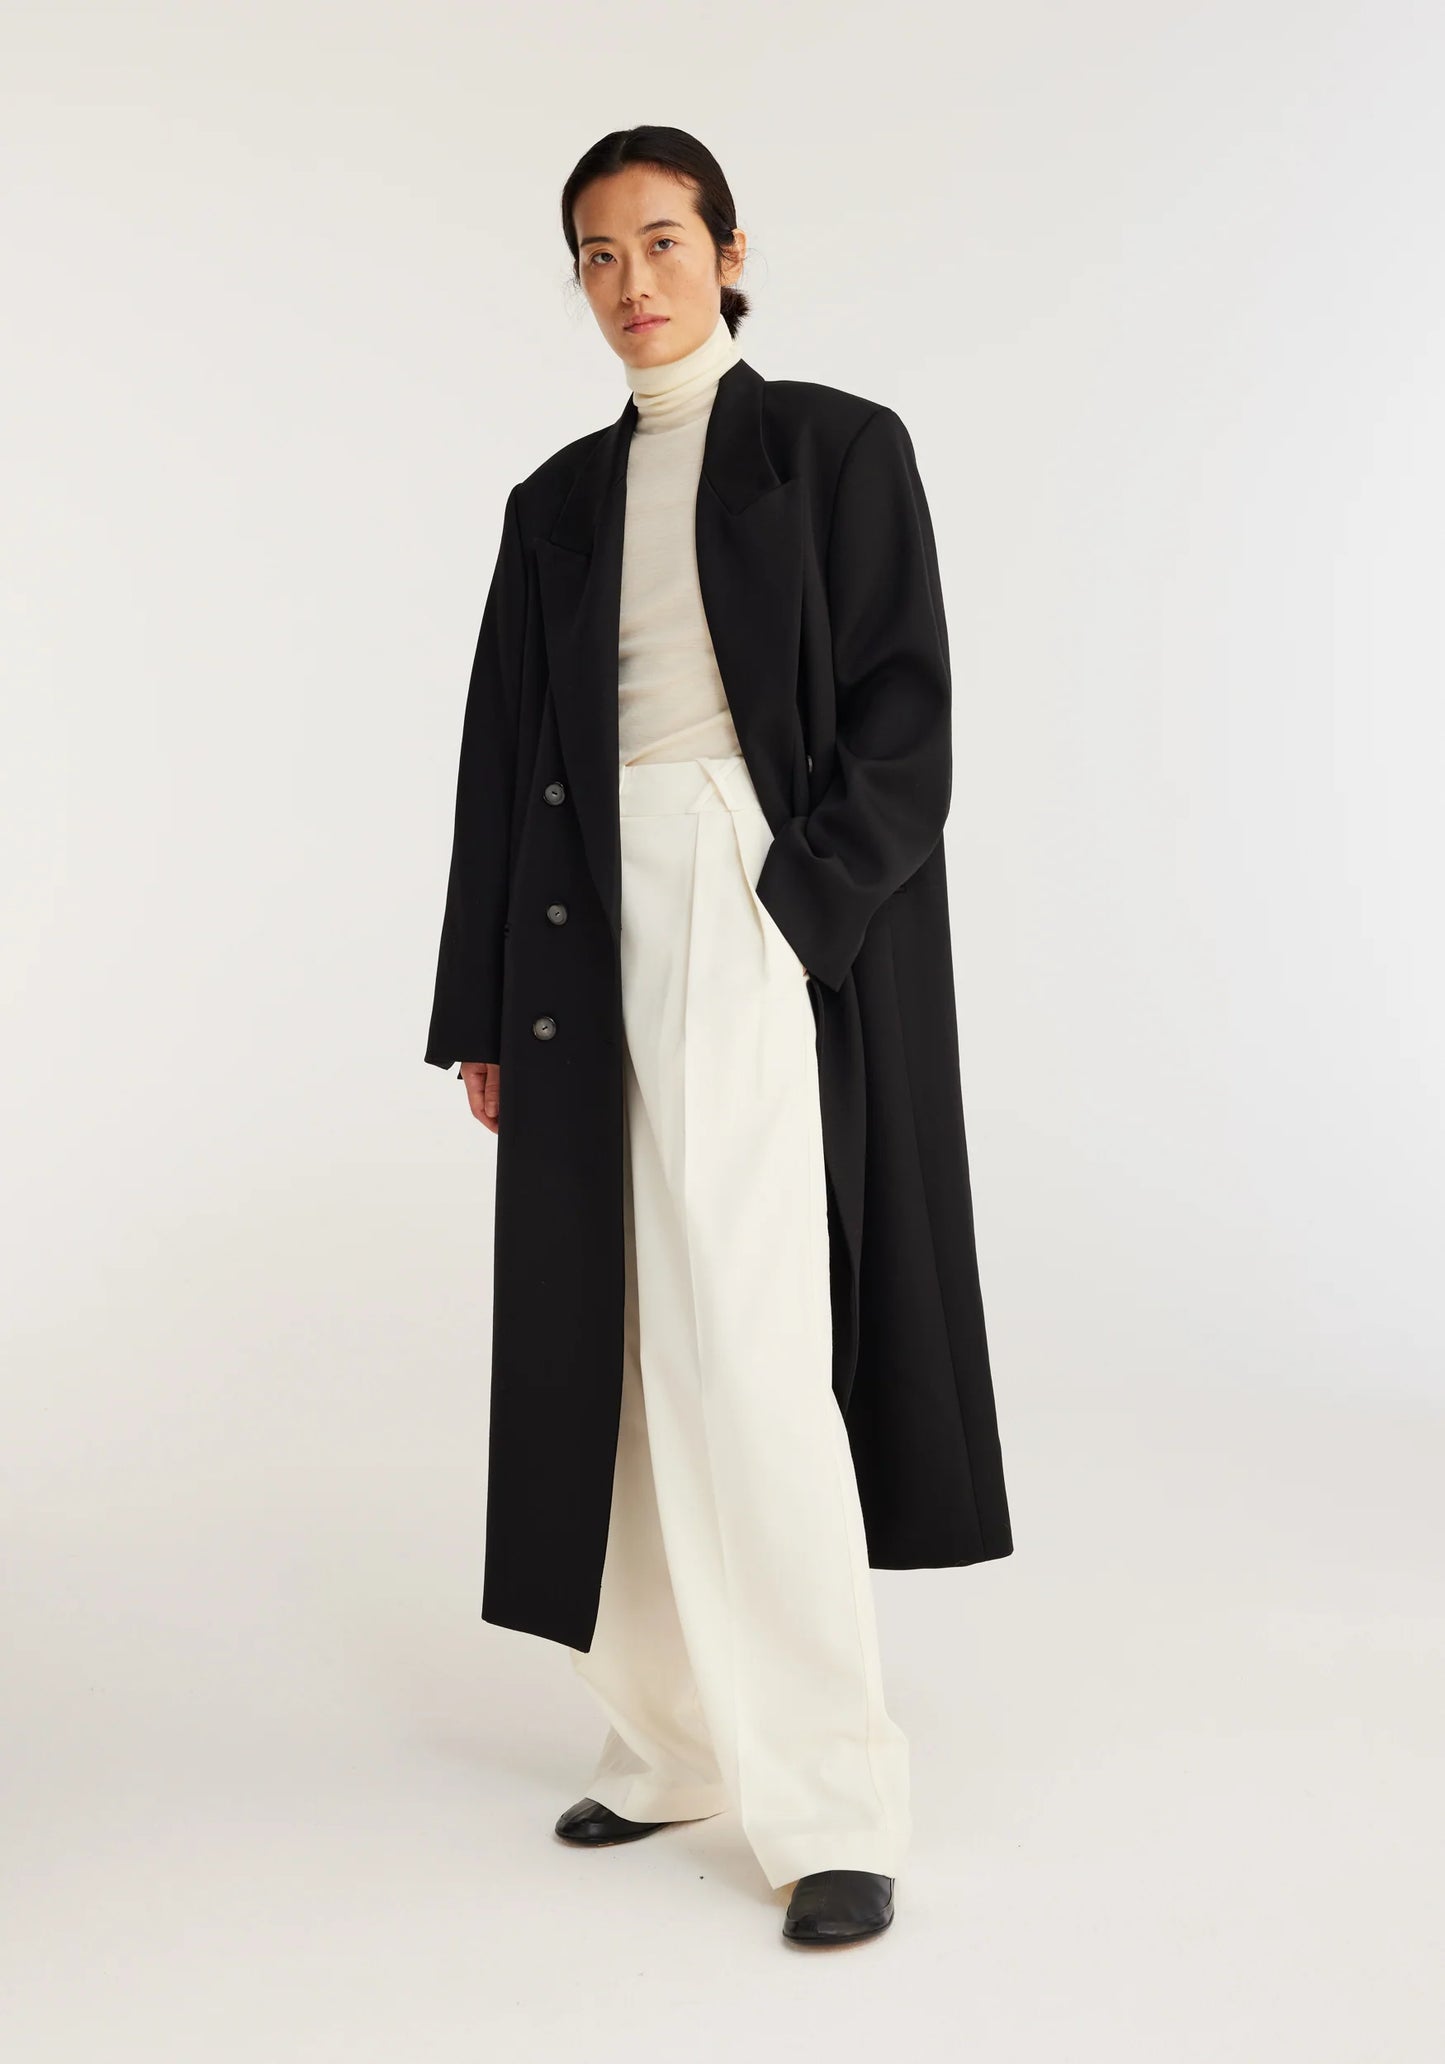 Tailored Black Cape Coat